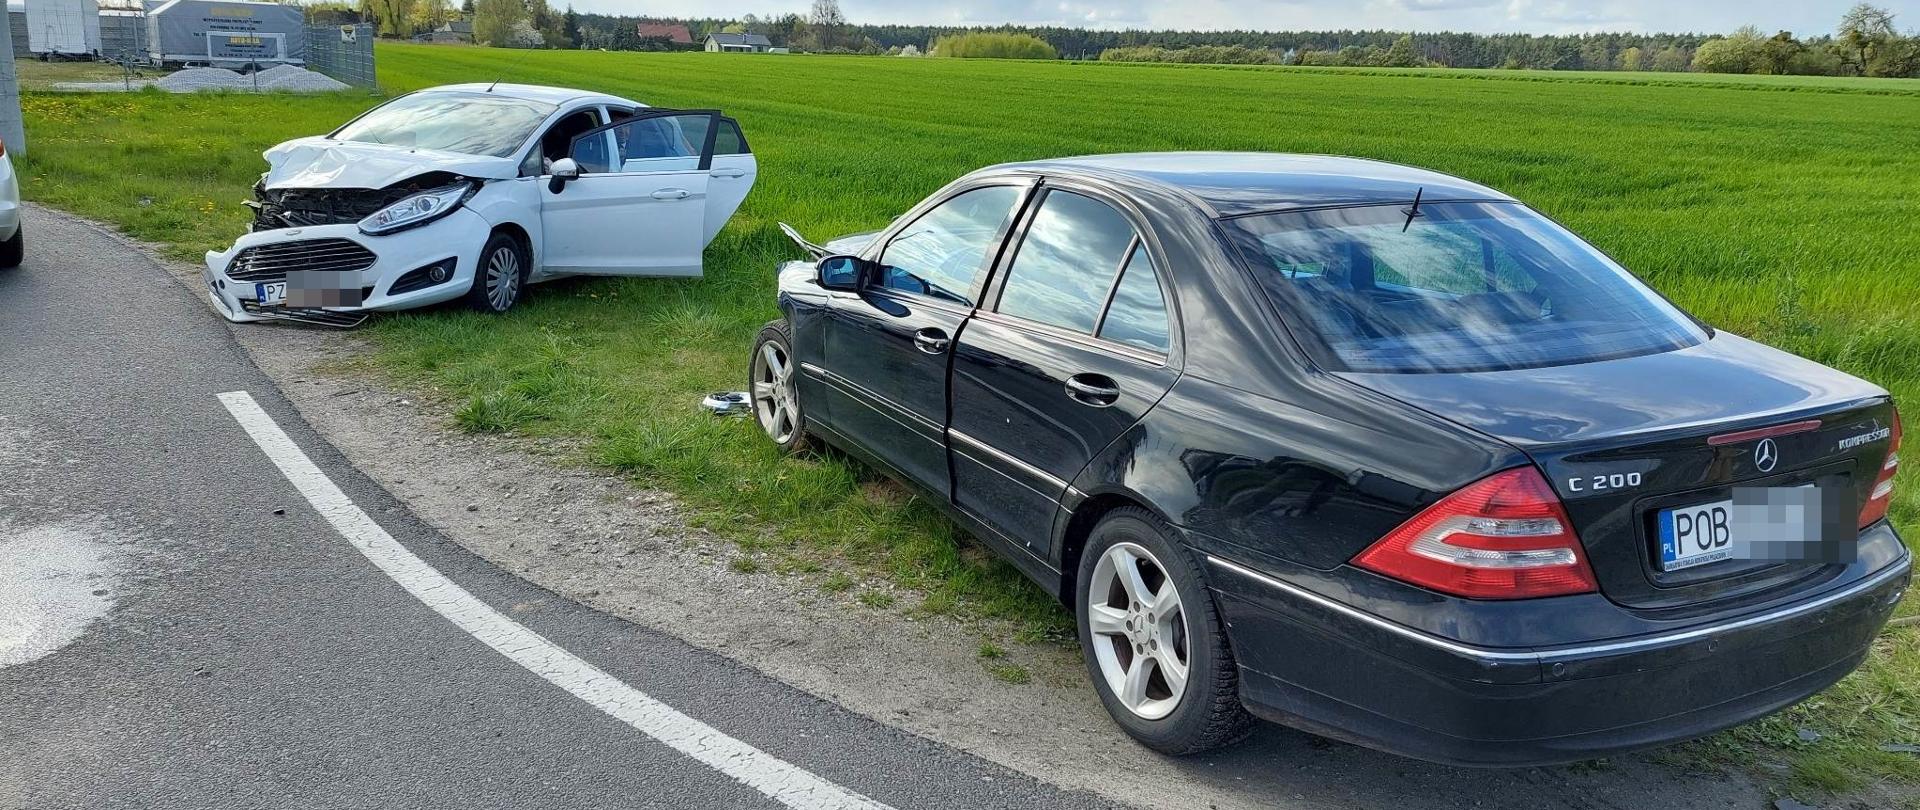 Na zdjęciu widać dwa samochody osobowe biorące udział w zdarzeniu 